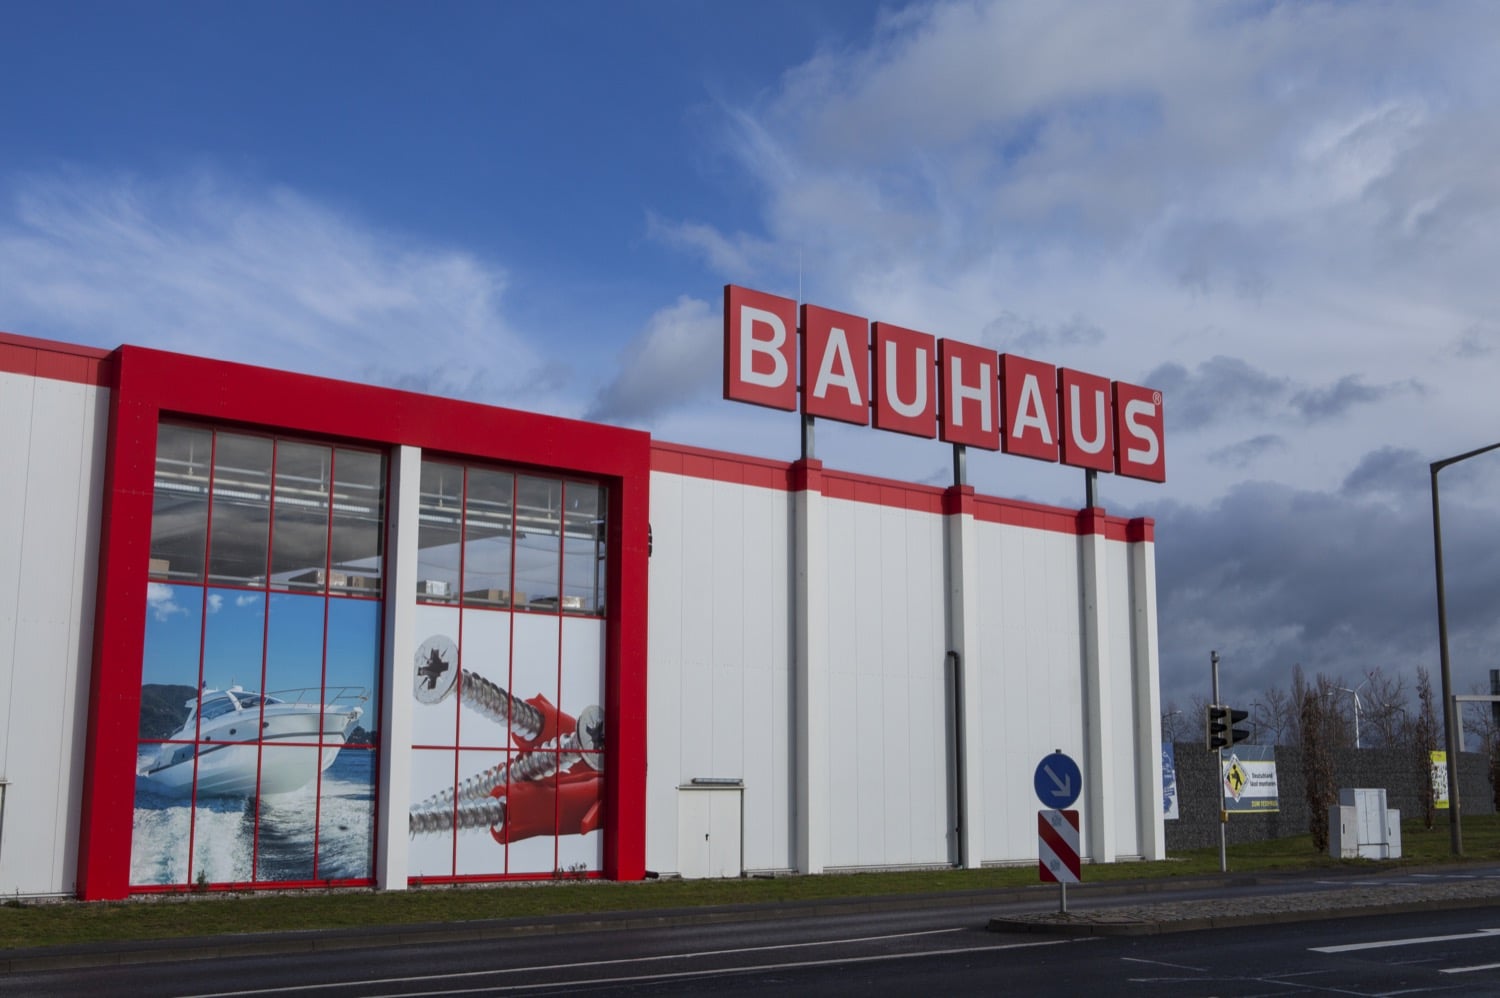 Hueblog: Preiserhöhung von Philips Hue schuld am Bauhaus-Aus?